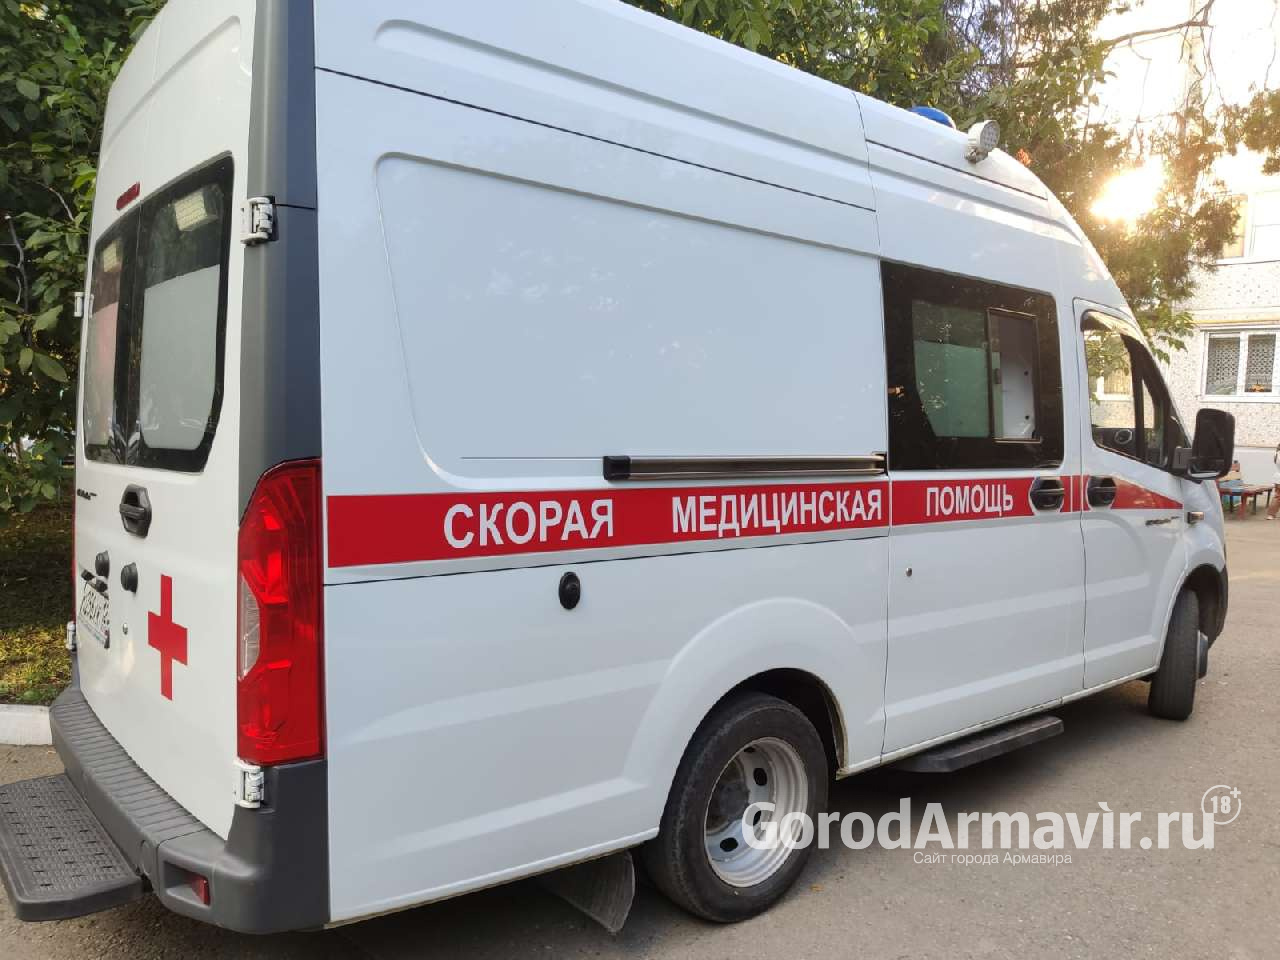 В Армавире 7 граждан с диагнозом «Коронавирус» обратились за помощью к медикам 